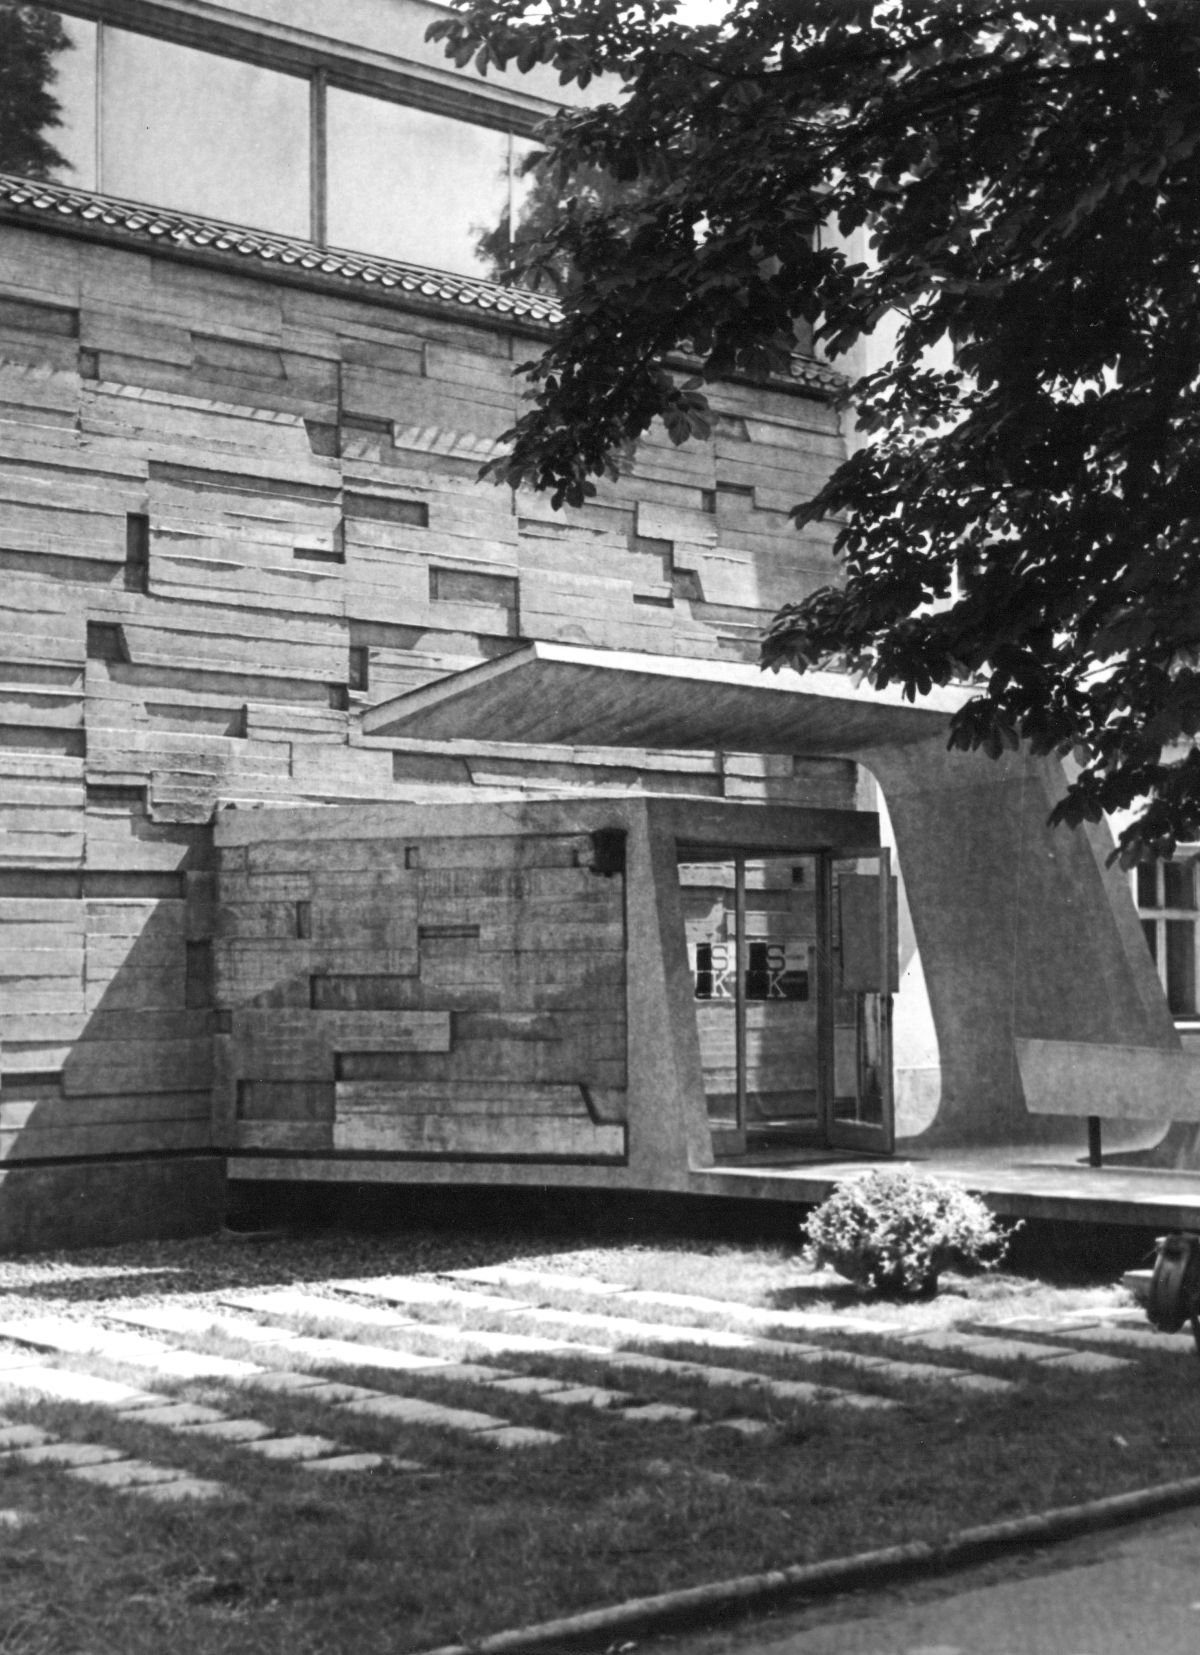 Wejście główne do Miejskiego Pawilonu Wystawowego, lata 60. XX wieku, fot. D. Zawadzki, Archiwum Galerii Bunkier Sztuki w Krakowie (źródło: materiały prasowe organizatora)